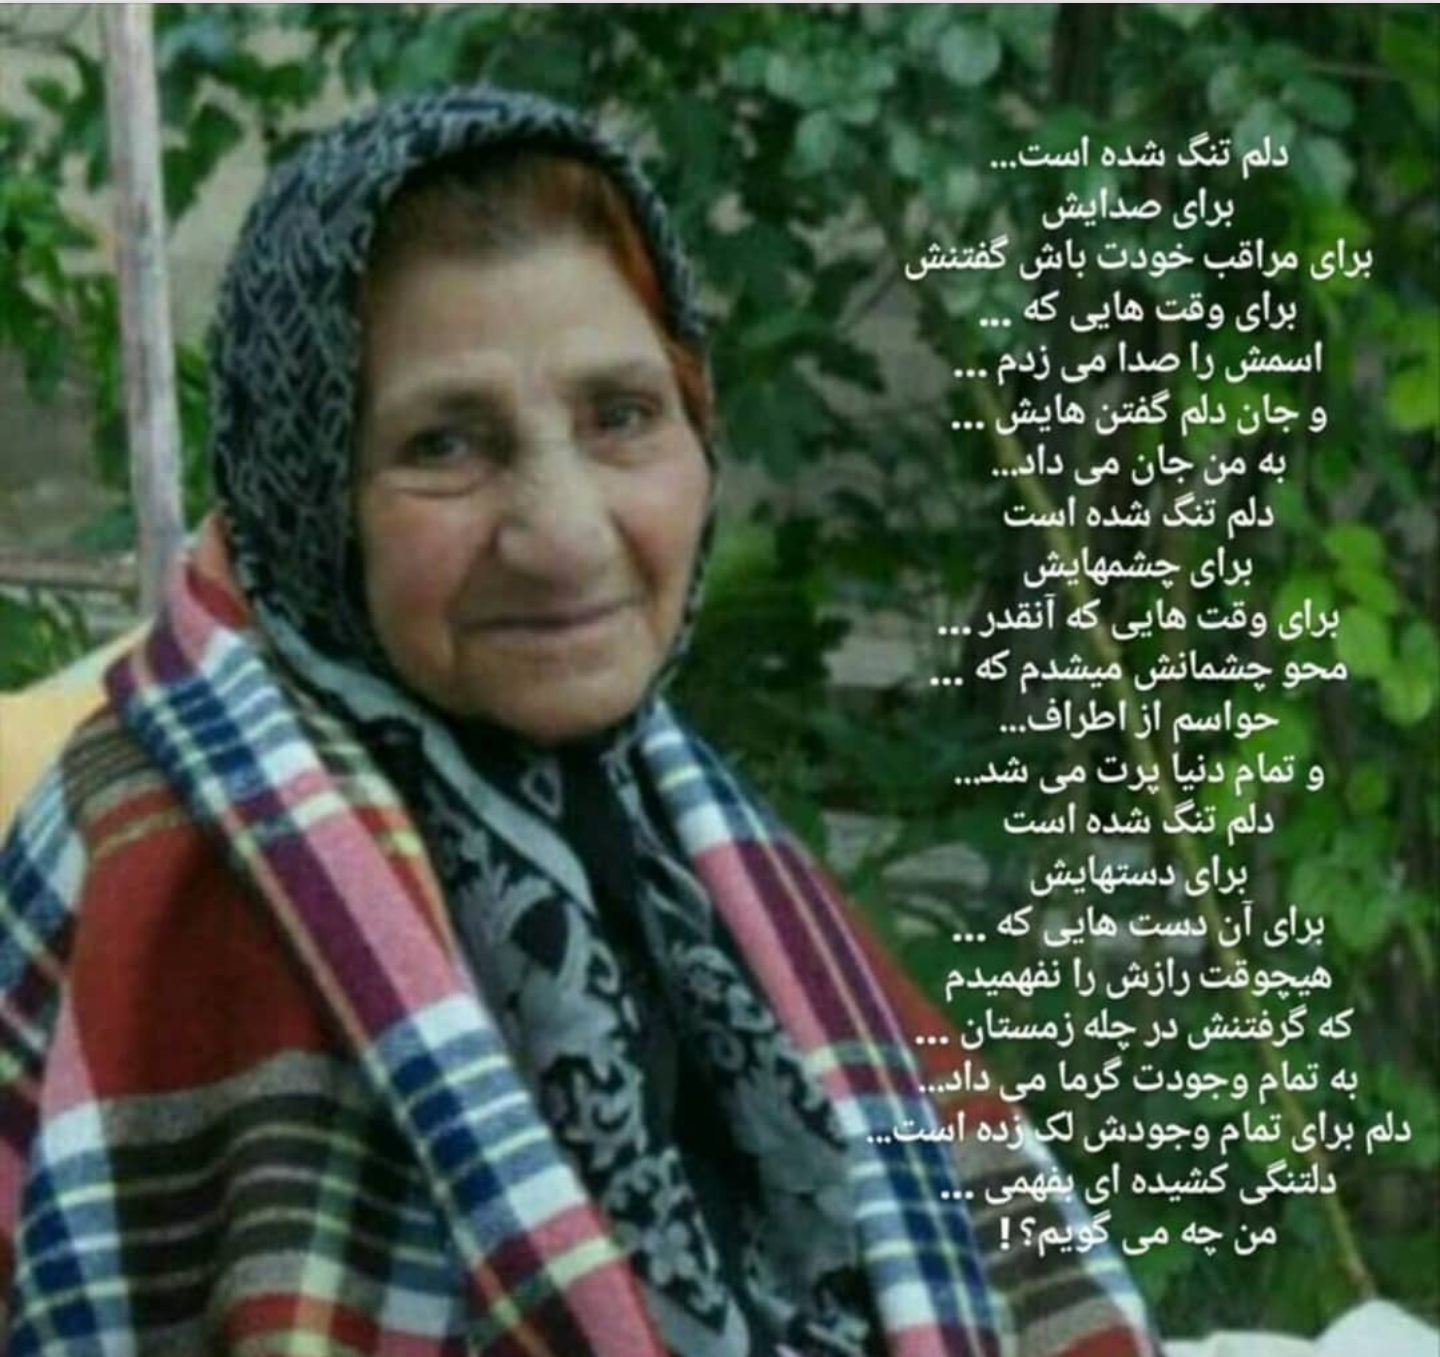 مادرشهید سردار رحیم شاهسون سیده فاطمه طباطبایی اصفهانی